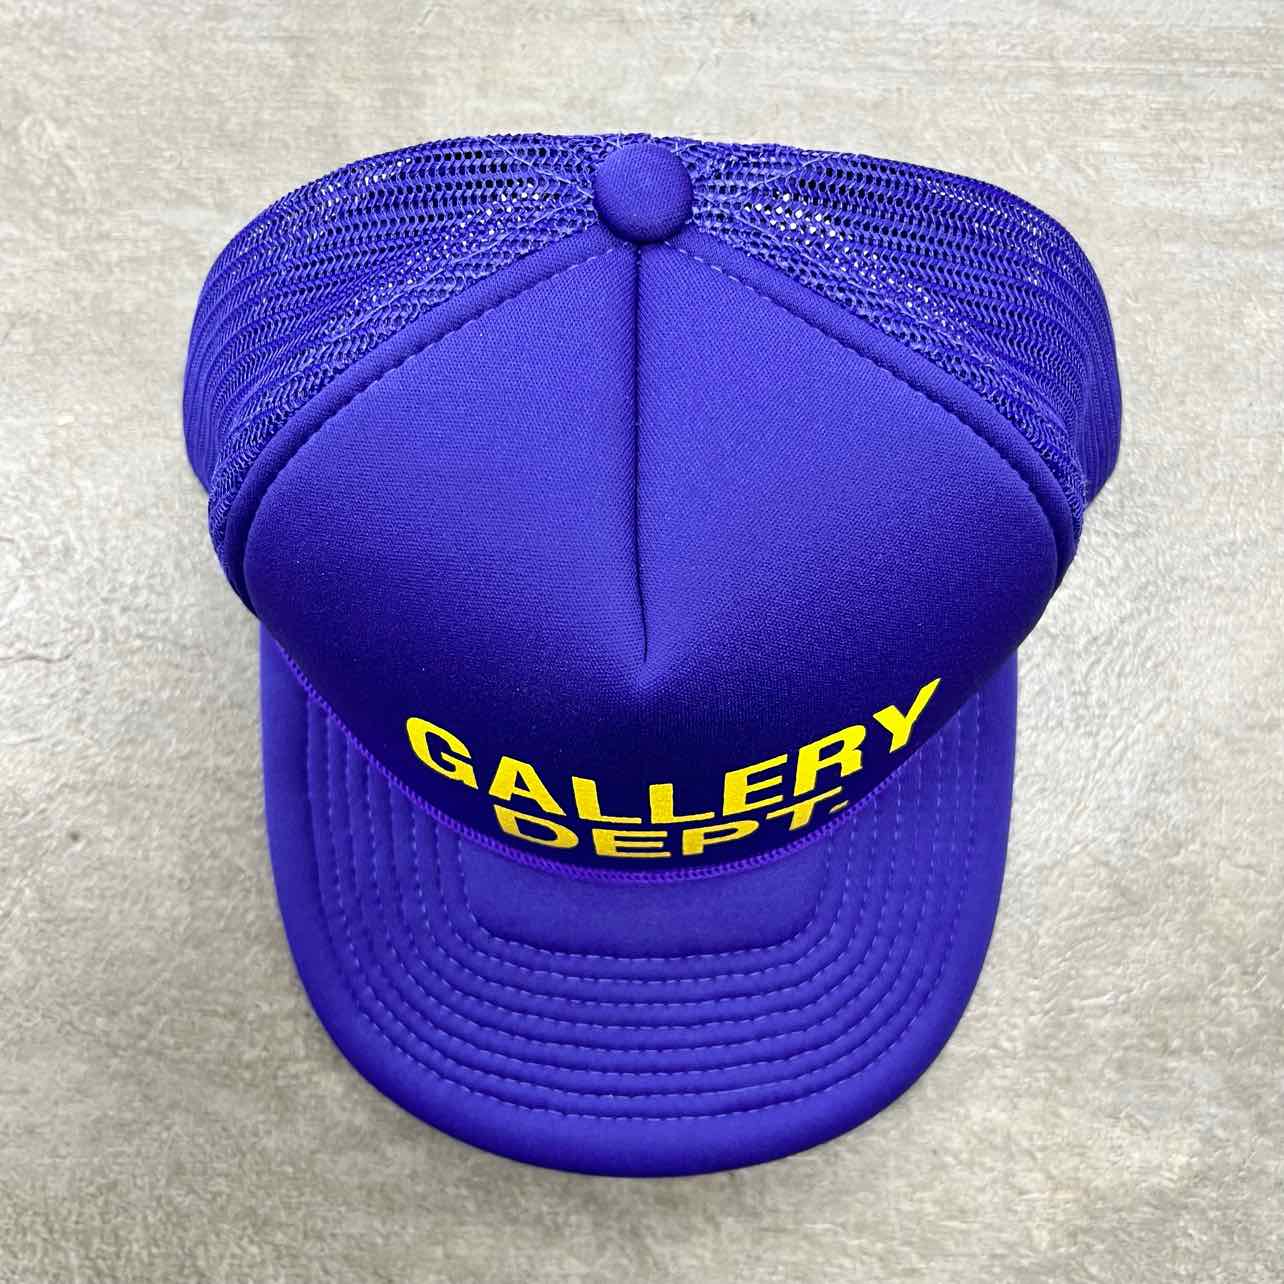 Gallery DEPT. Trucker Hat &quot;YELLOW&quot; New Purple